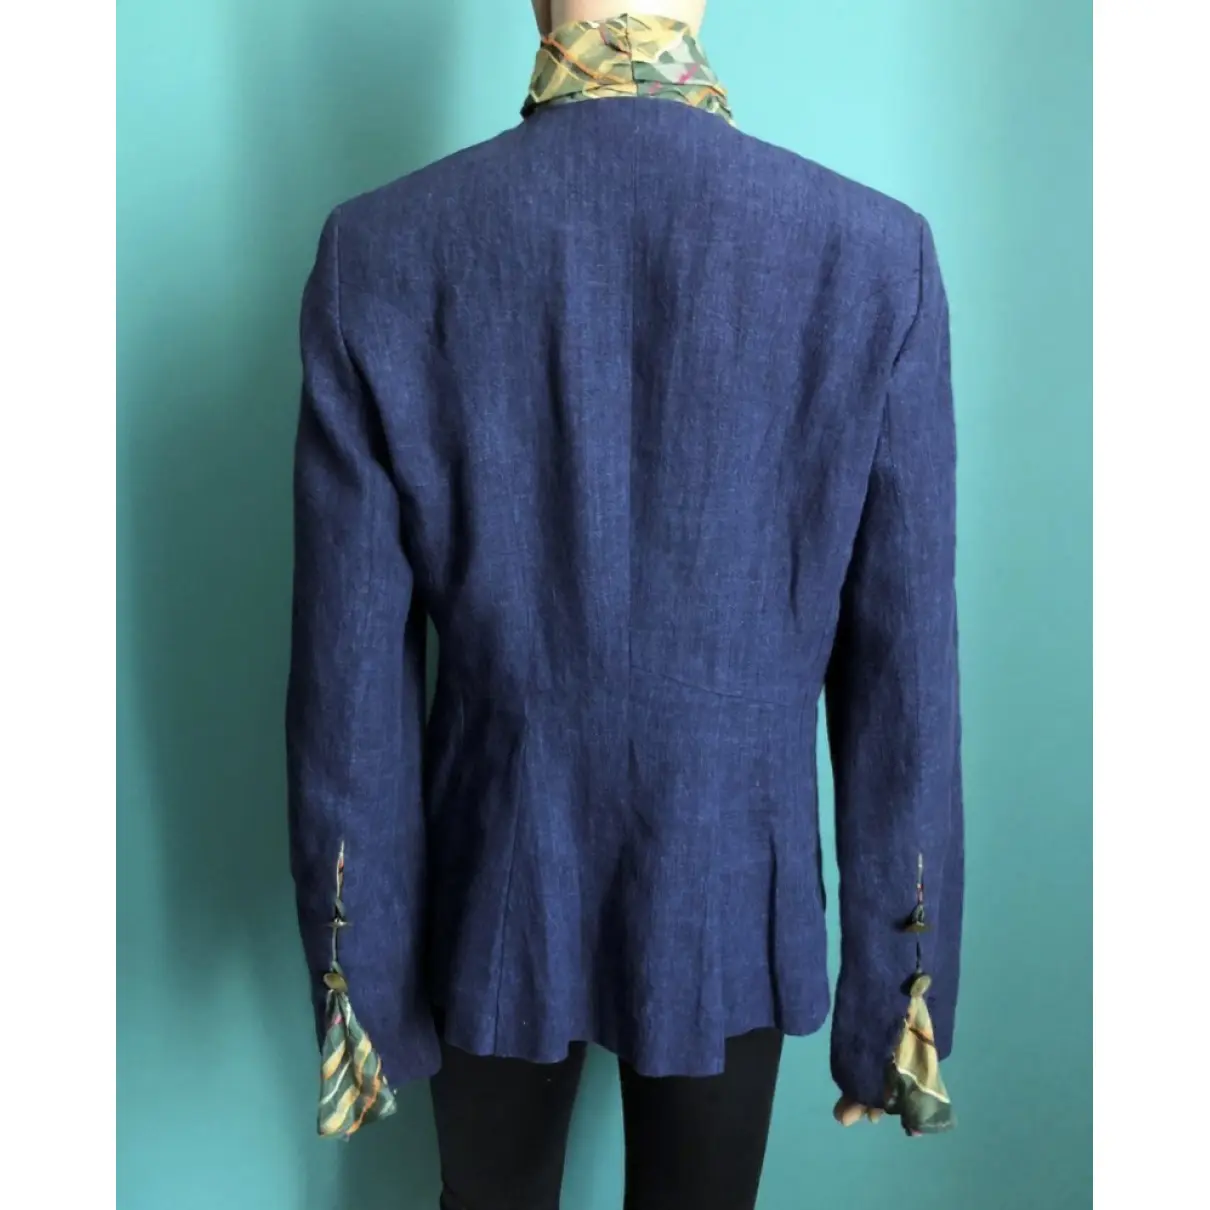 Buy Sophie Habsburg Linen jacket online